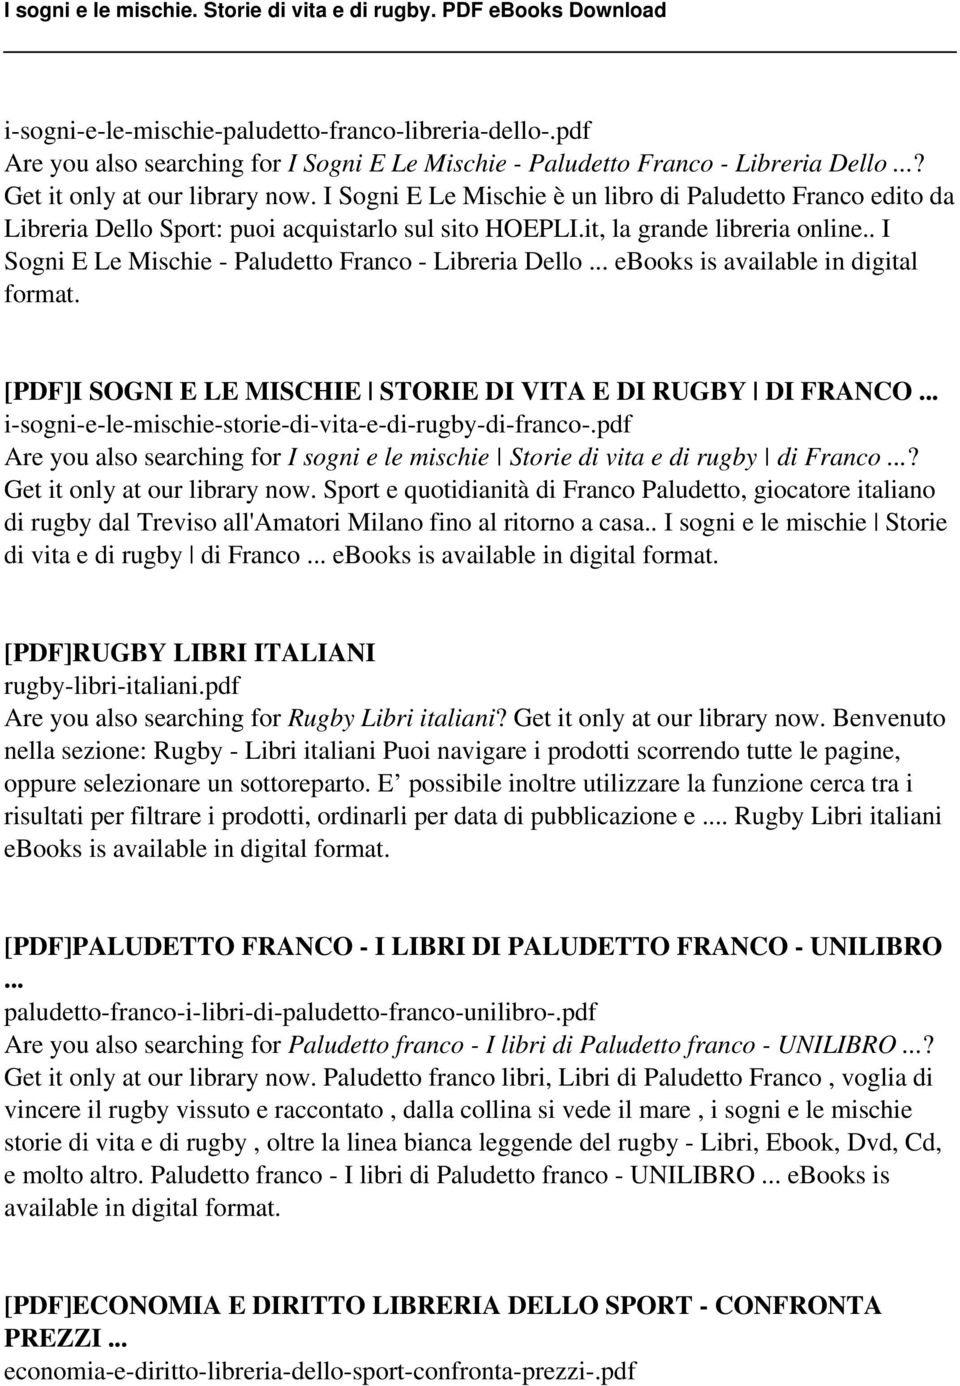 . I Sogni E Le Mischie - Paludetto Franco - Libreria Dello... ebooks is available in digital format. [PDF]I SOGNI E LE MISCHIE STORIE DI VITA E DI RUGBY DI FRANCO.